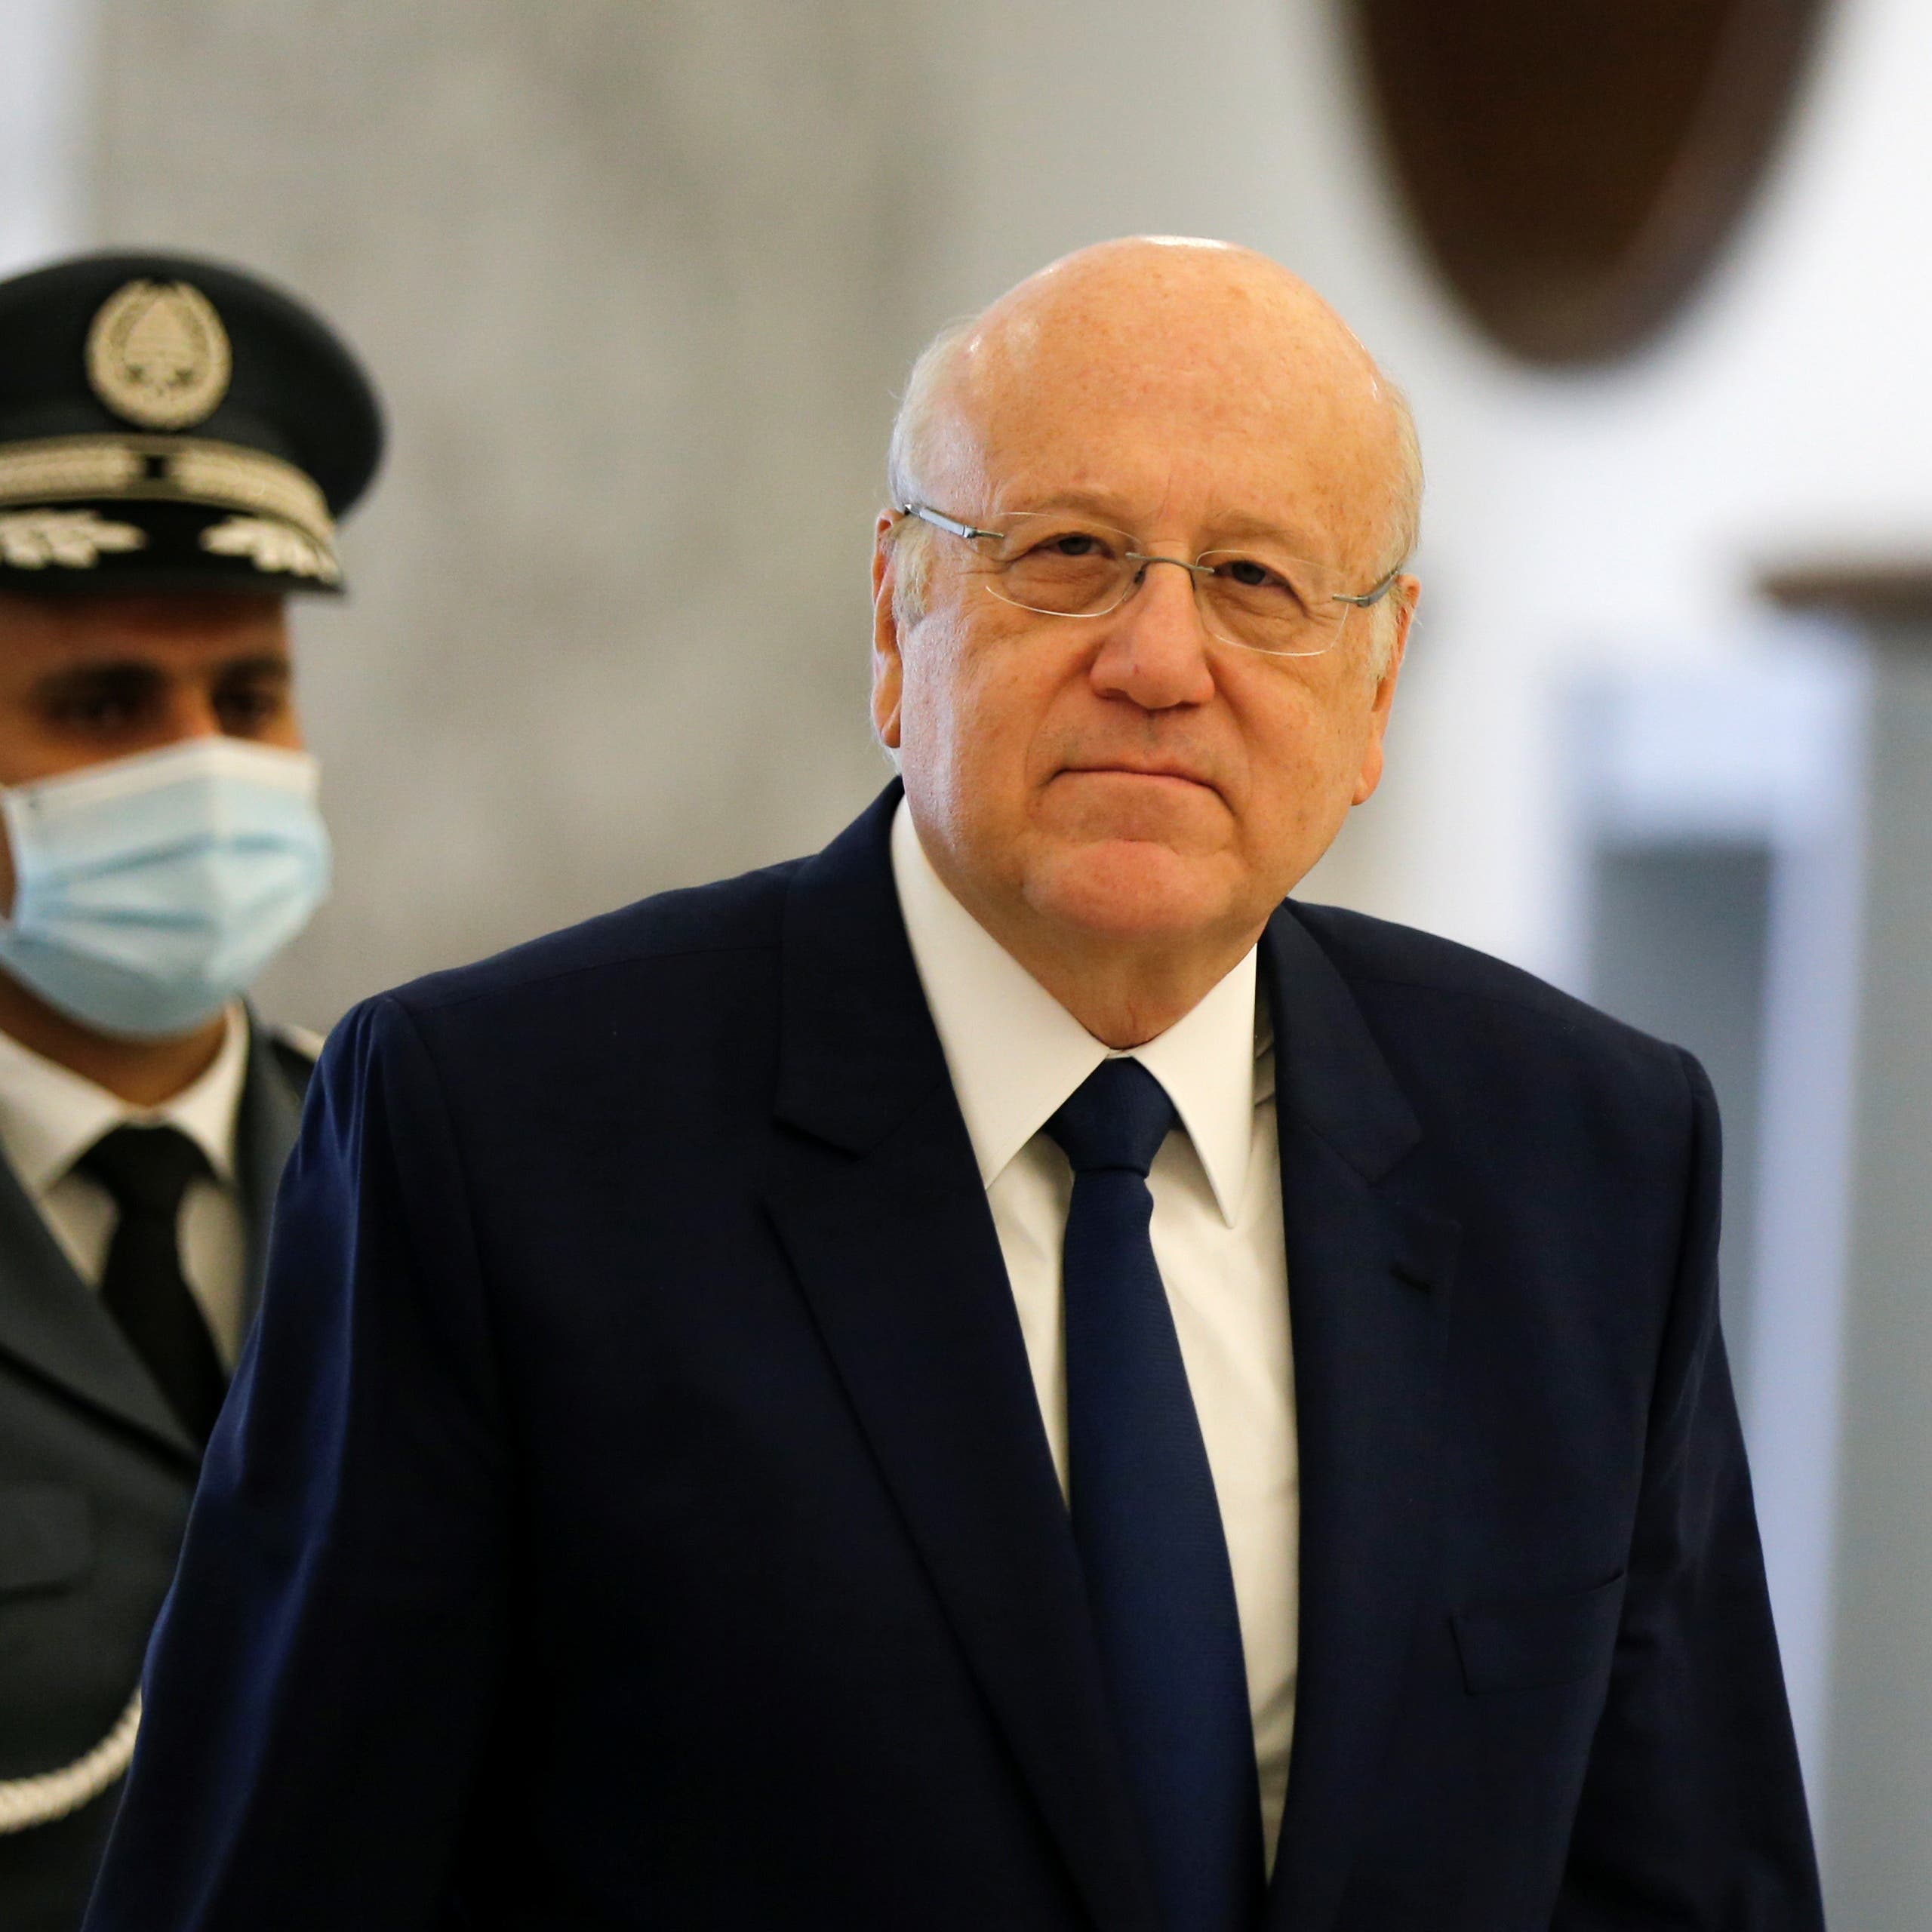 مجلس الأمن: على الحكومة اللبنانية تنفيذ الإصلاحات بسرعة